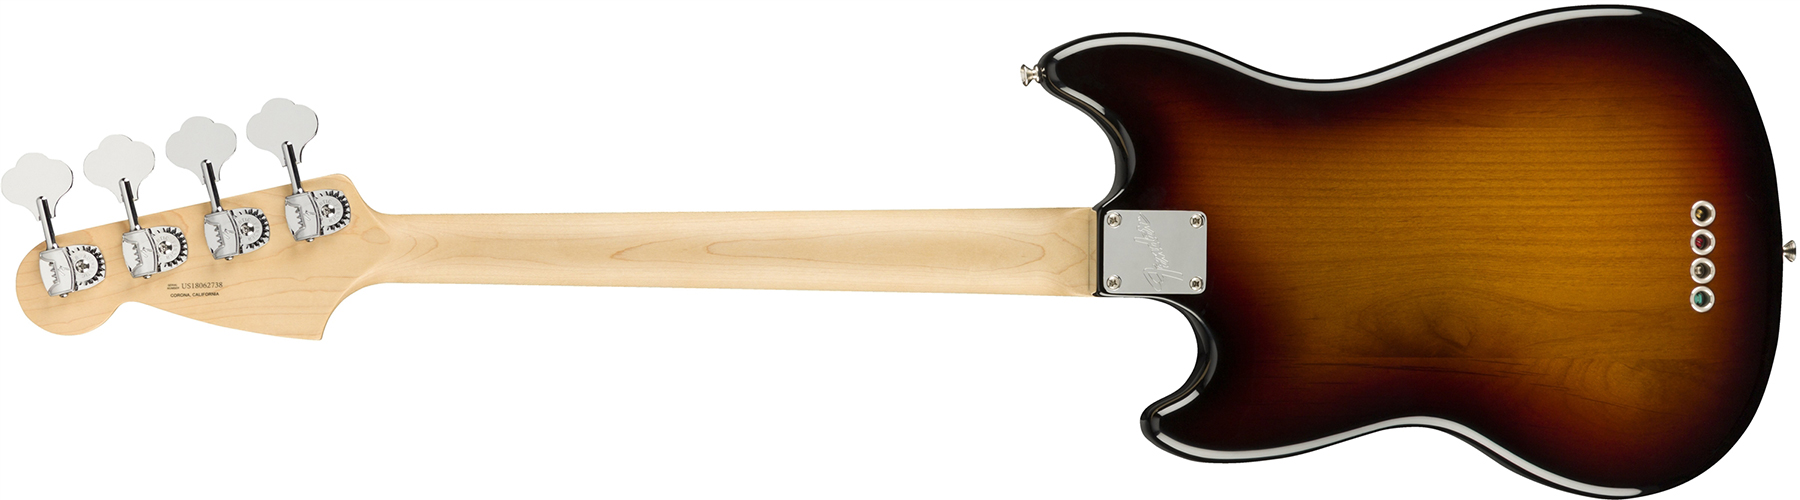 Fender Mustang Bass American Performer Usa Rw - 3-color Sunburst - Basse Électrique Enfants - Variation 1